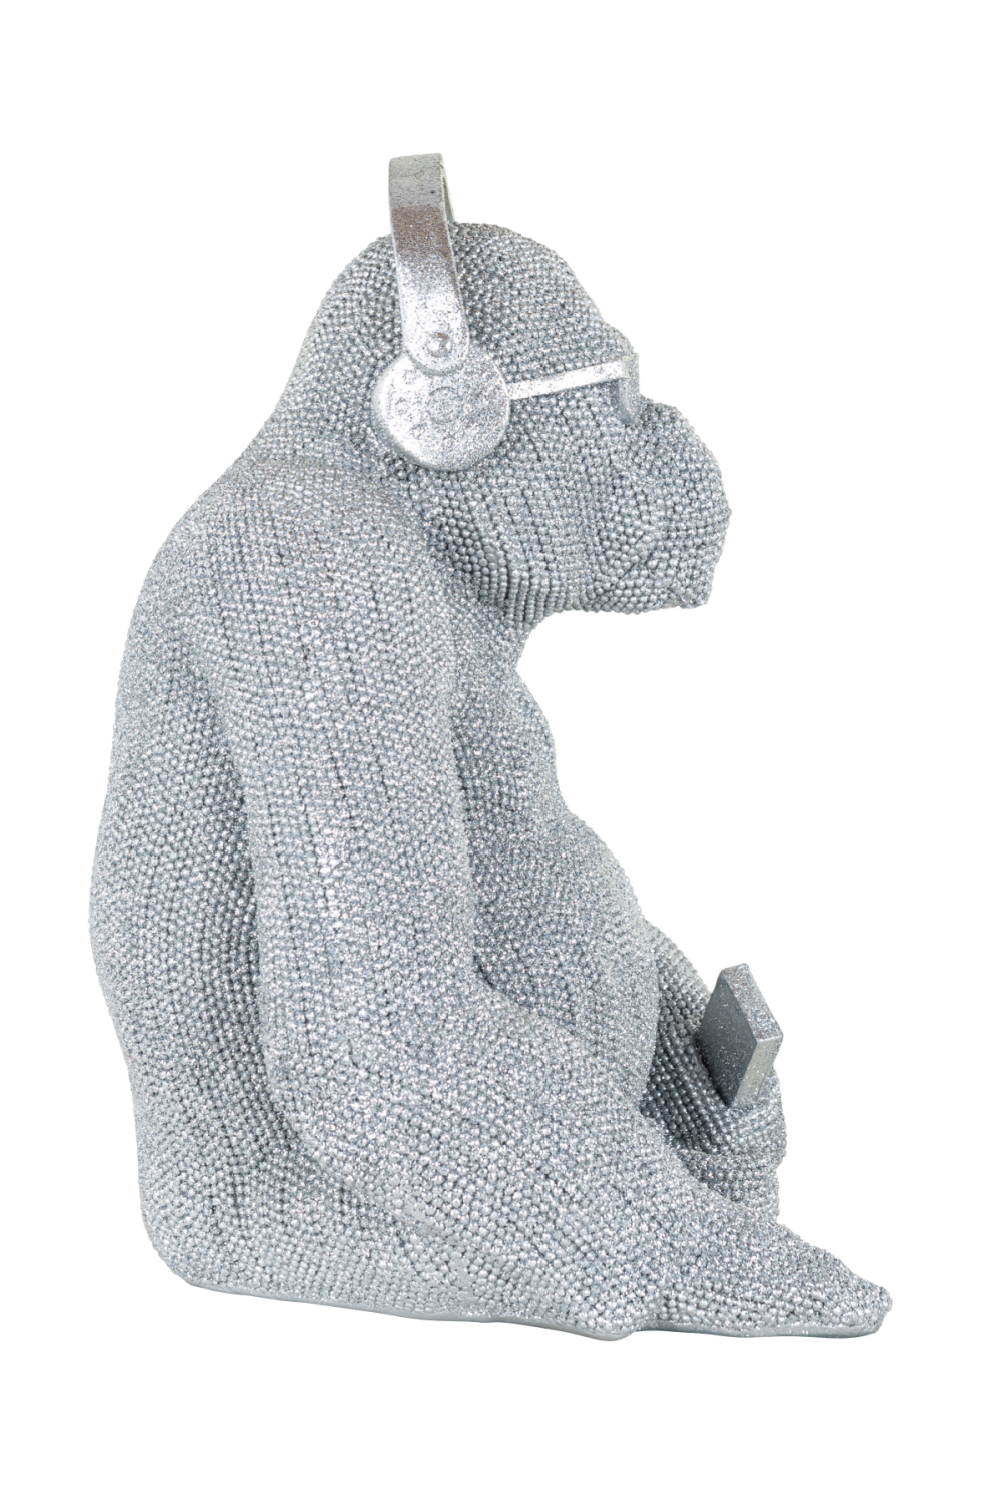 Decorative Silver Animal In Headset | OROA Gorilla Music | OROA.com